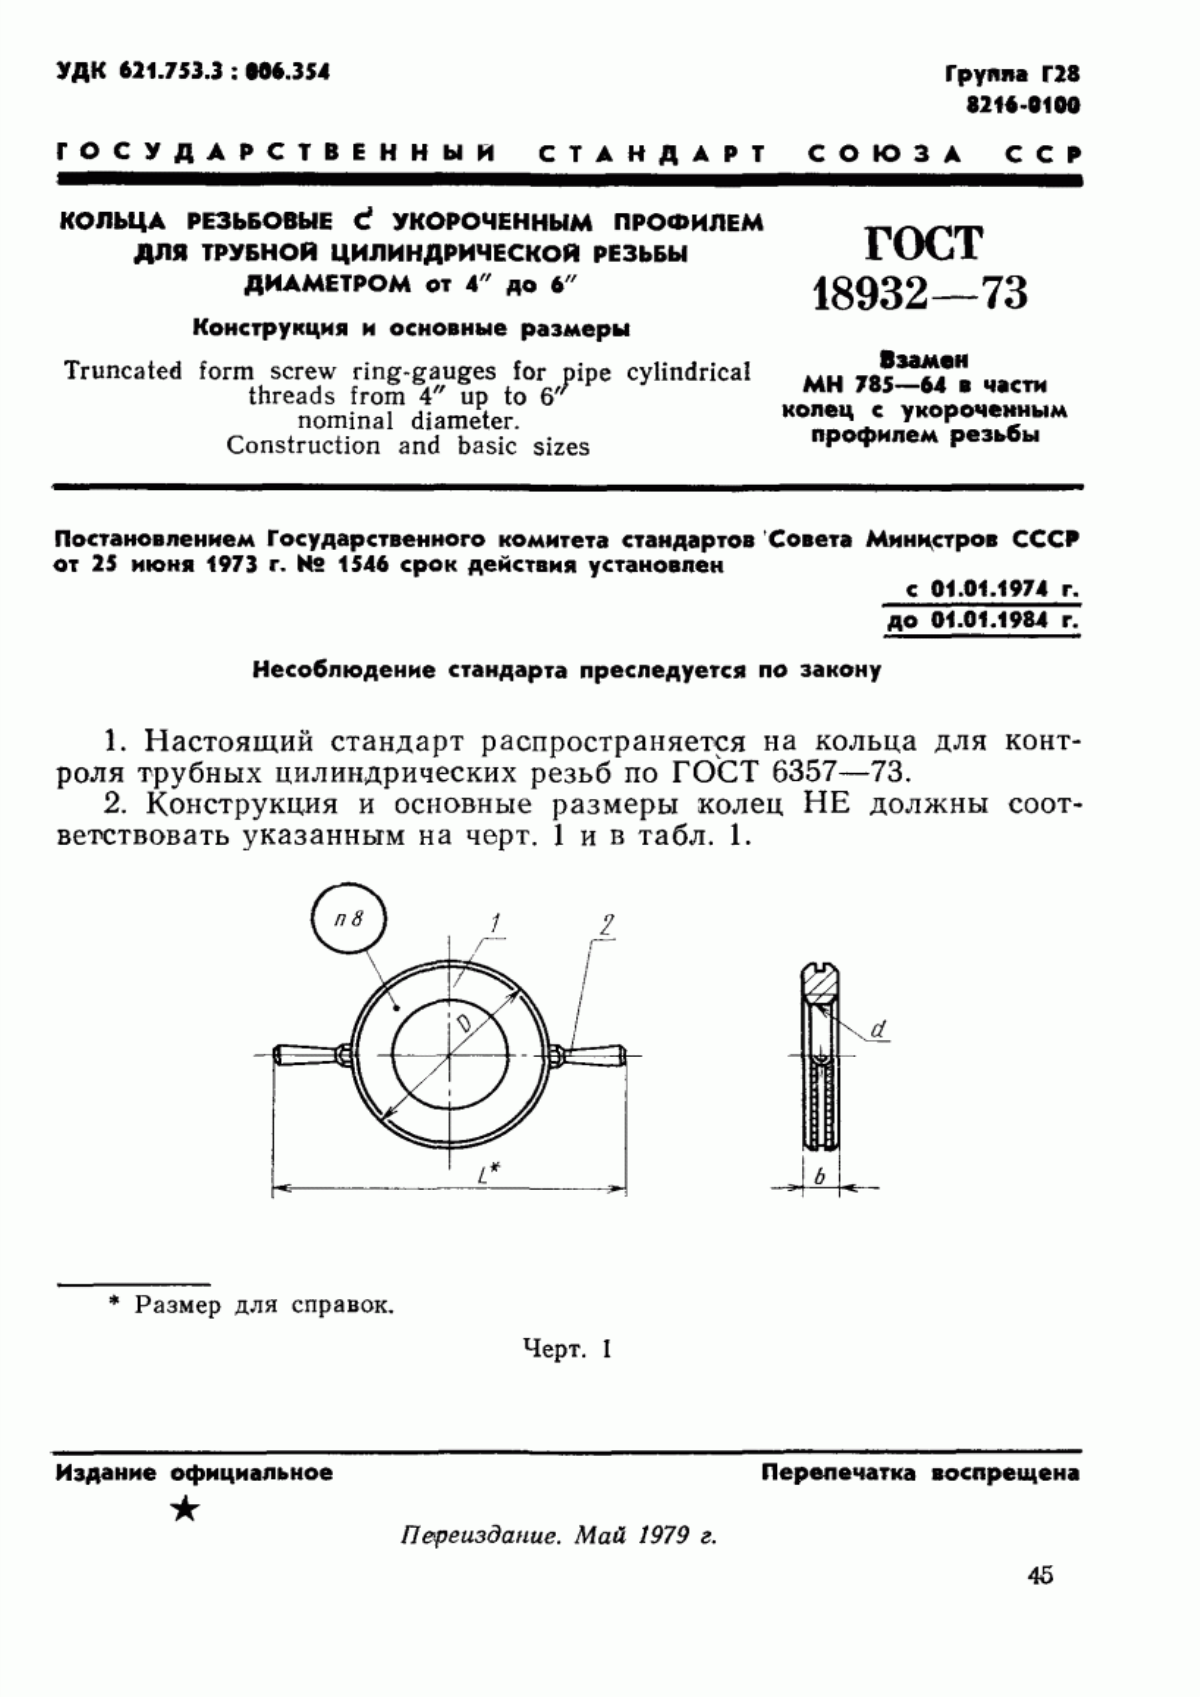 ГОСТ 18932-73 Кольца резьбовые с укороченным профилем для трубной цилиндрической резьбы диаметром от 4" до 6". Конструкция и основные размеры